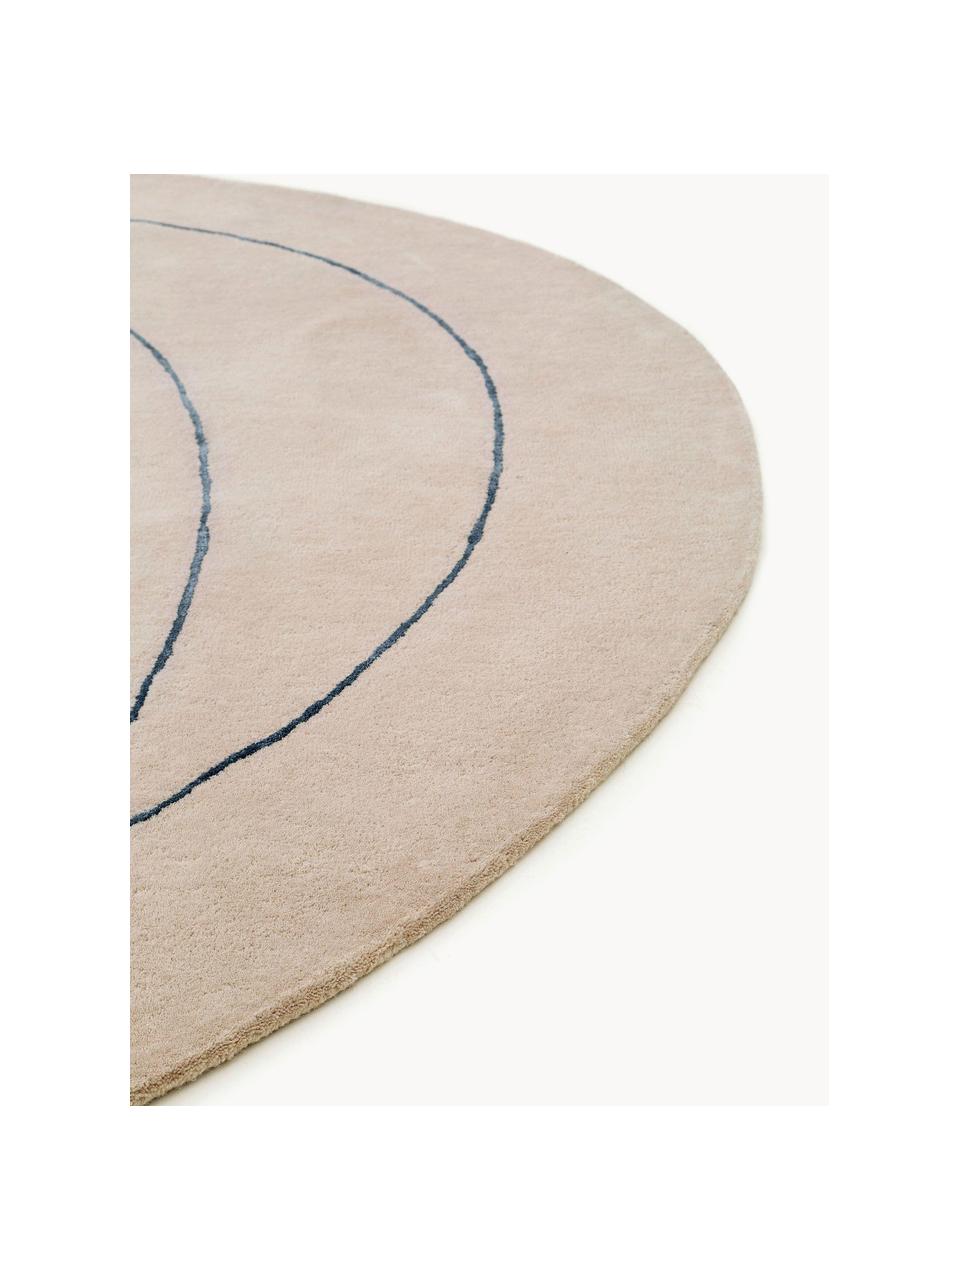 Ručne tkaný vlnený koberec v organickom tvare Shape, 90 %  vlna, 10 % bavlna 

V prvých týždňoch používania môžu vlnené koberce uvoľňovať vlákna, tento jav po čase zmizne, Svetlobéžová, čierna, Ø 200 cm (veľkosť L)